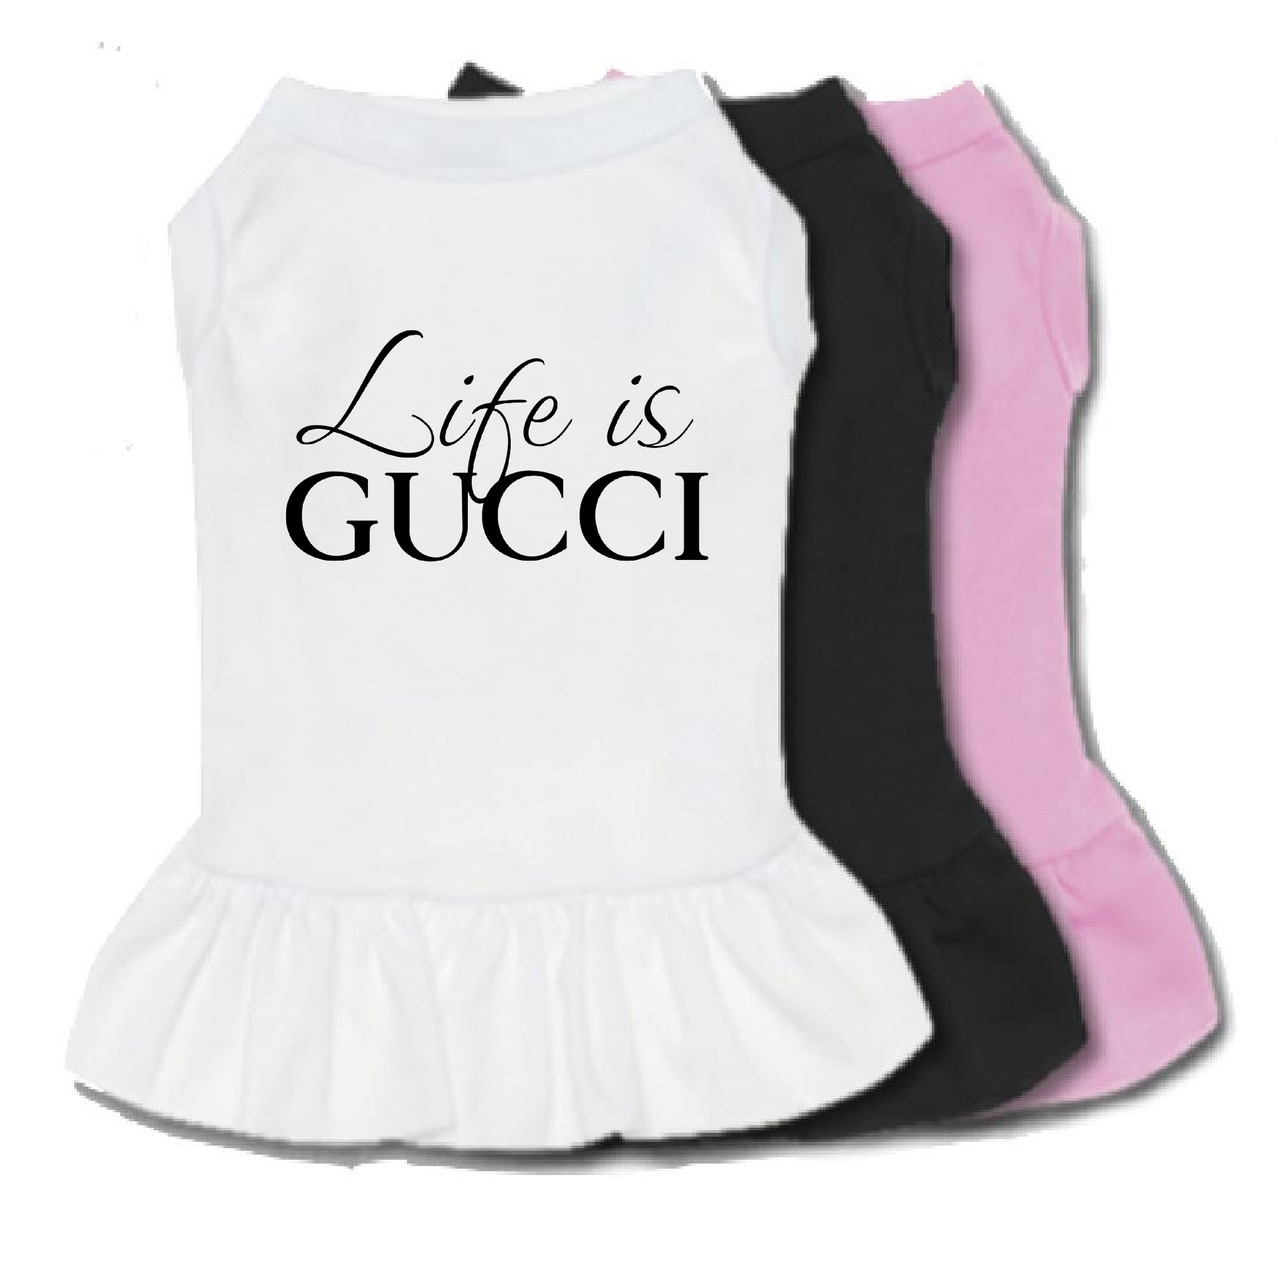  Gucci Dog Clothes